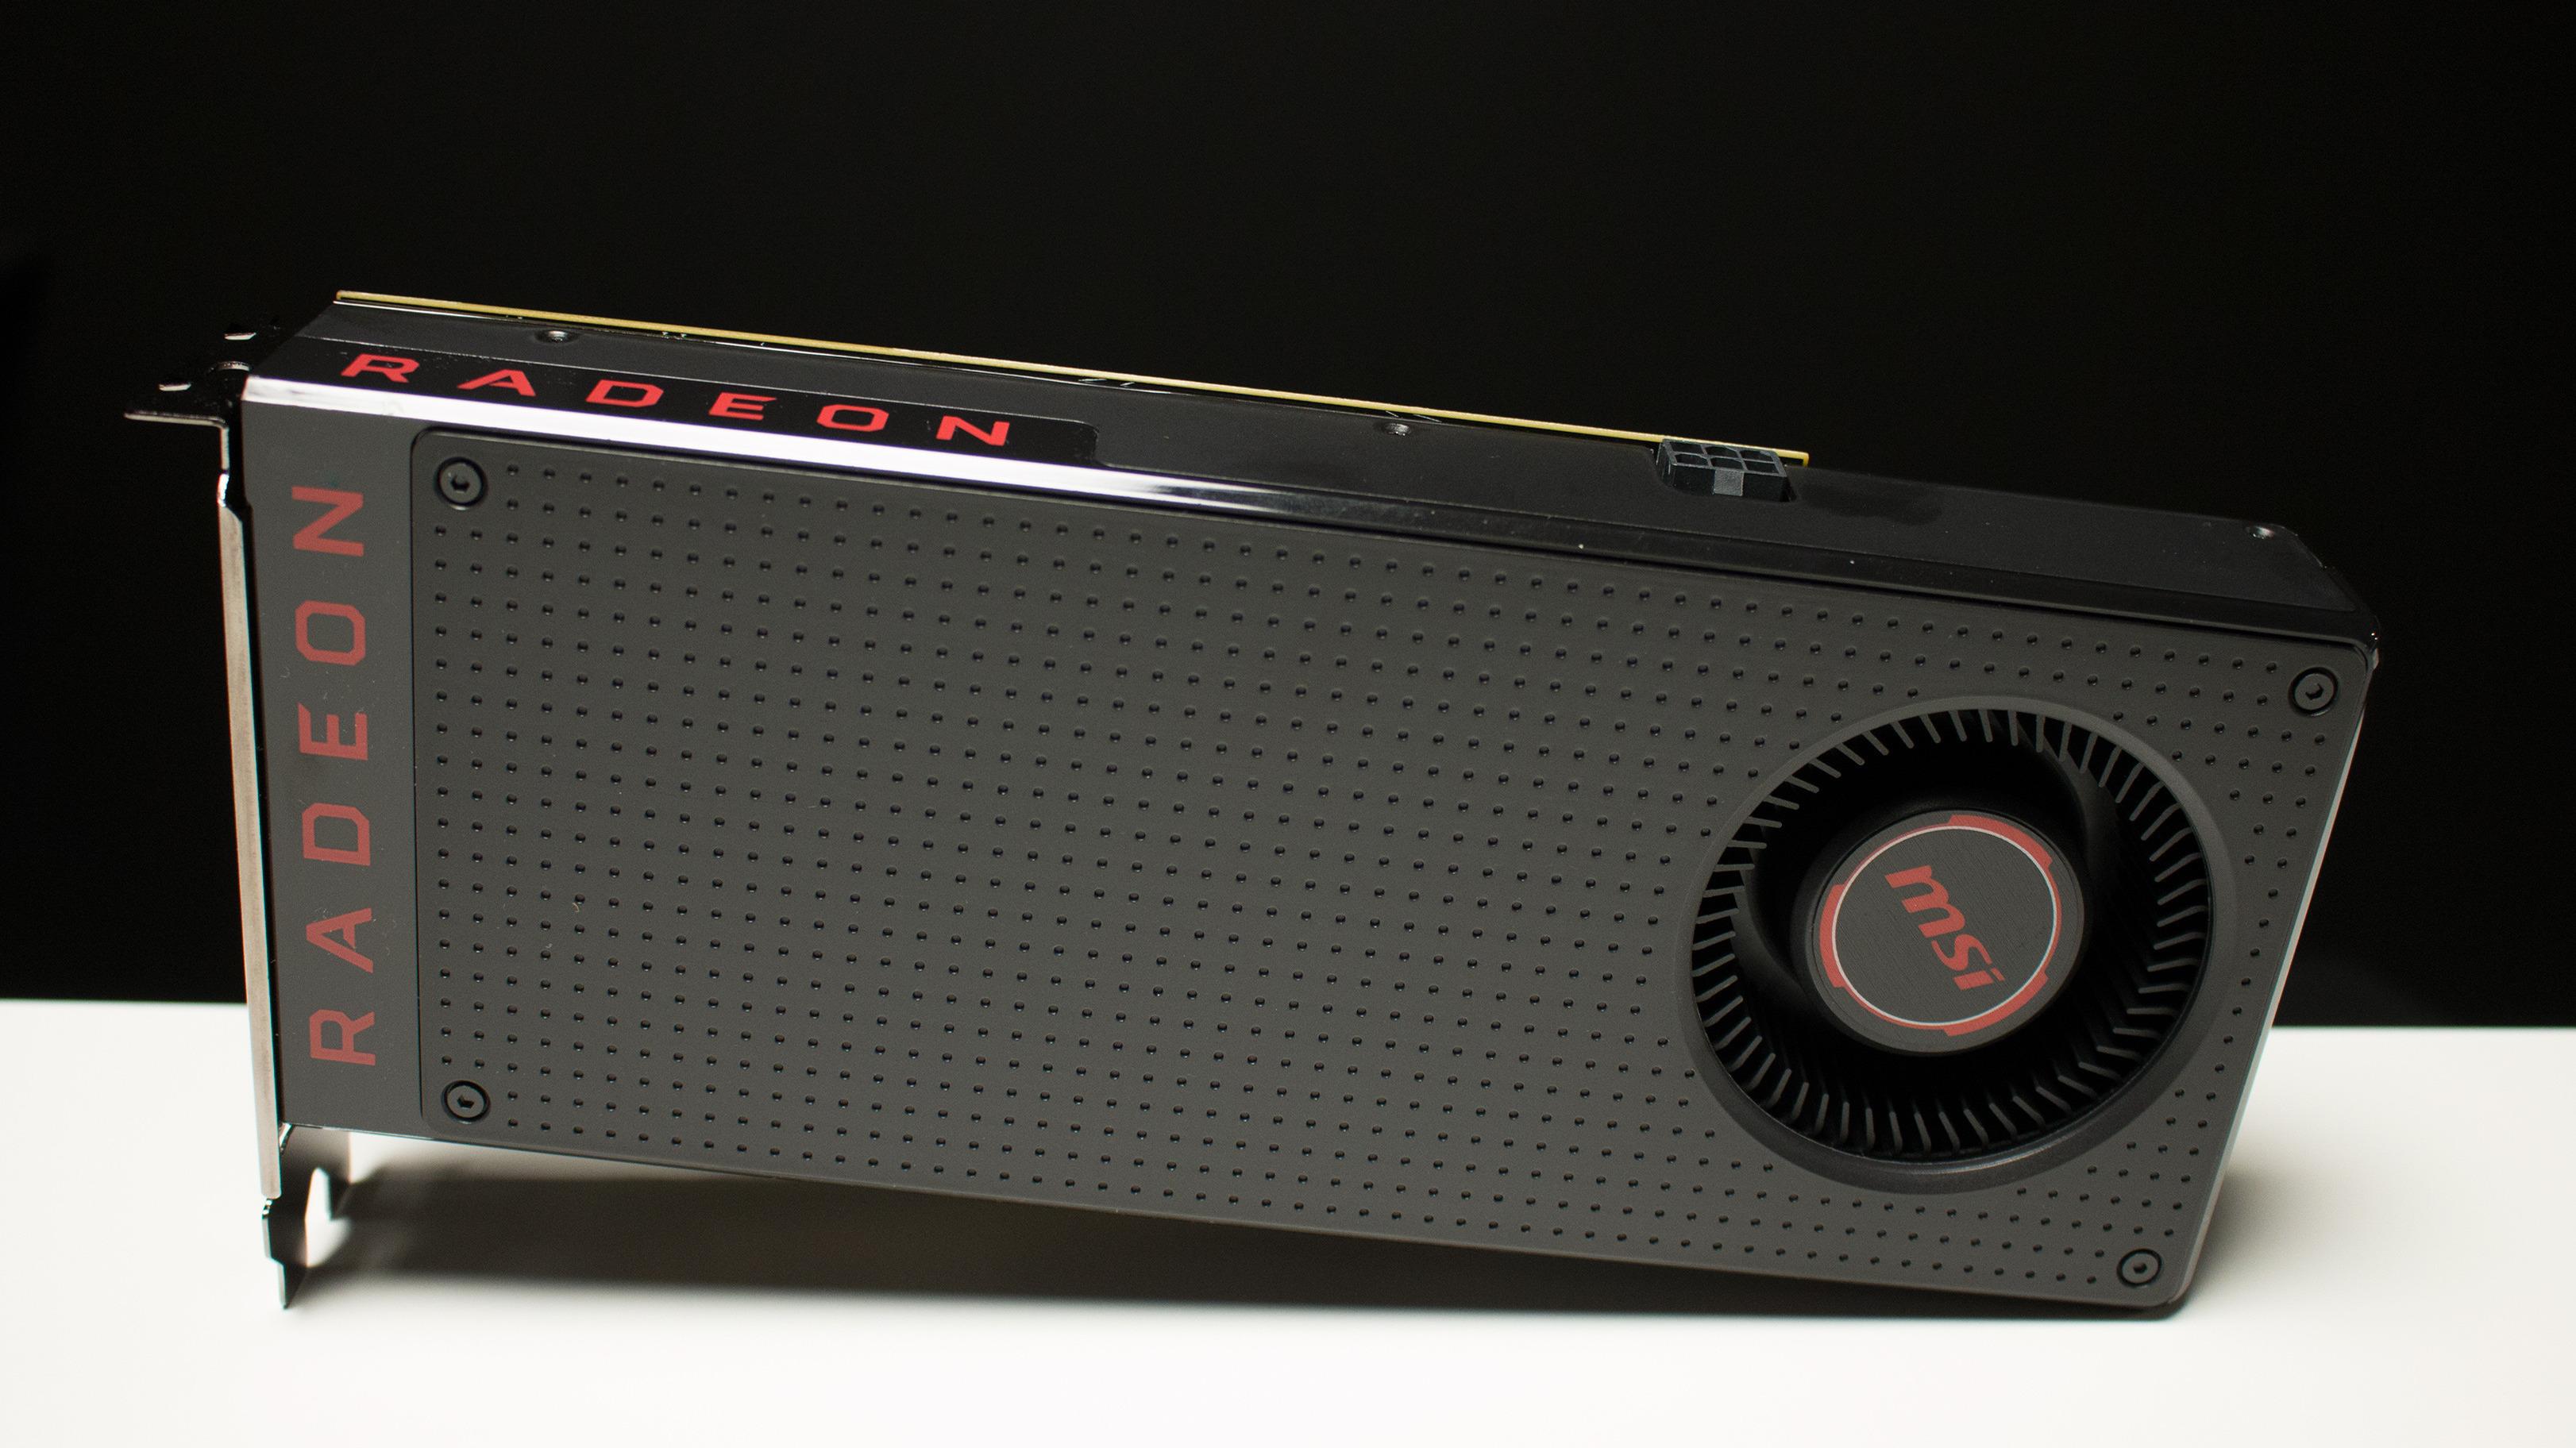 AMDs RX 480 skiller seg ikke veldig ut fra selskapets tidligere referansedesign, men er det ikke hakket mer elegant?